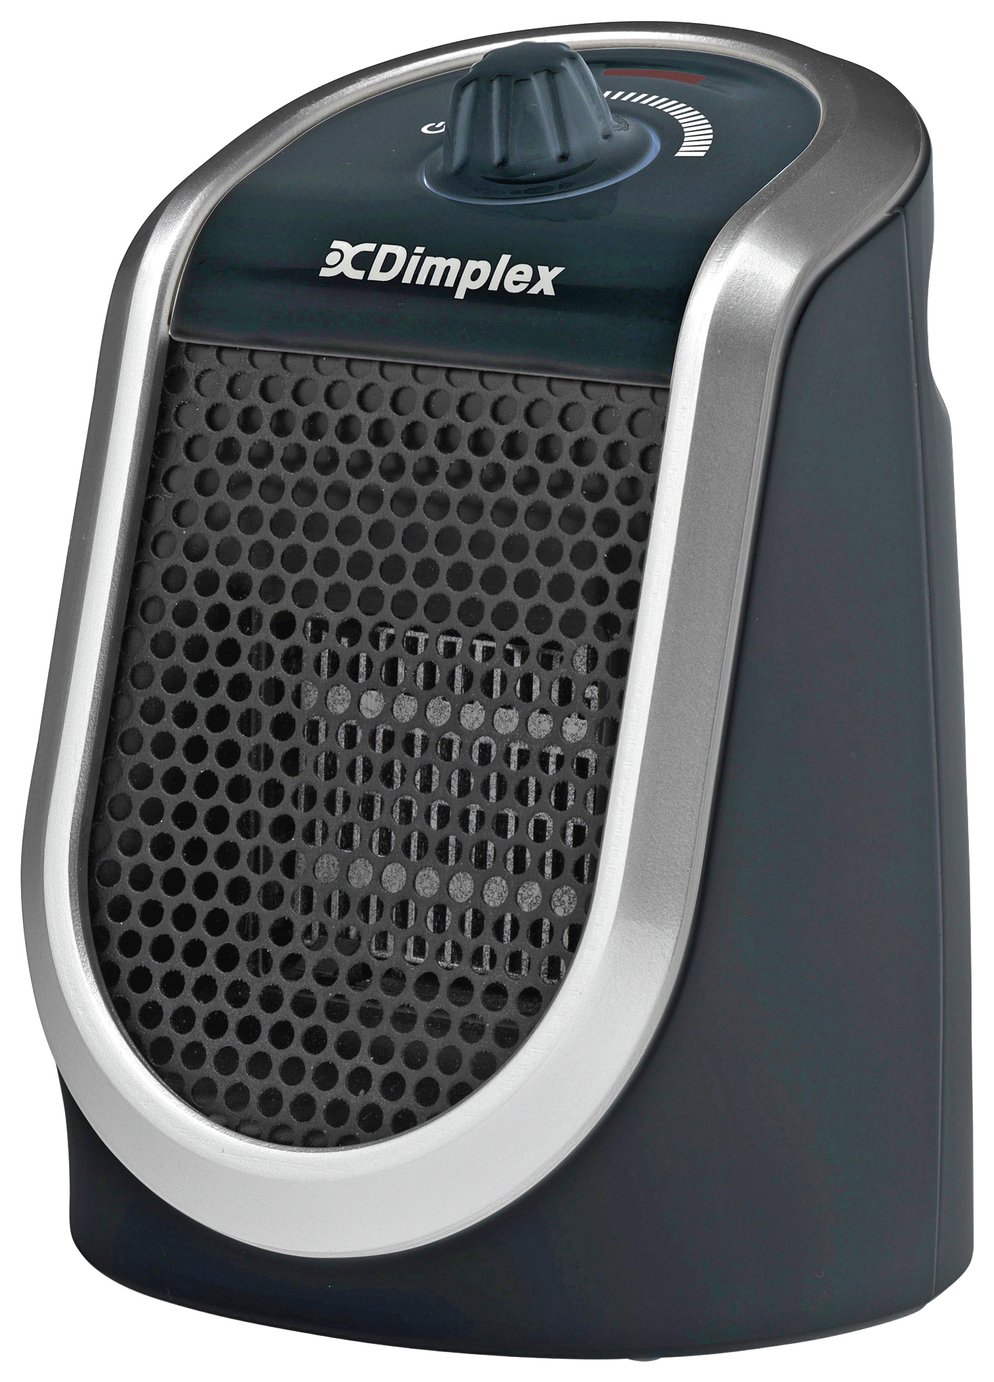 Dimplex 250W Personal Fan Heater